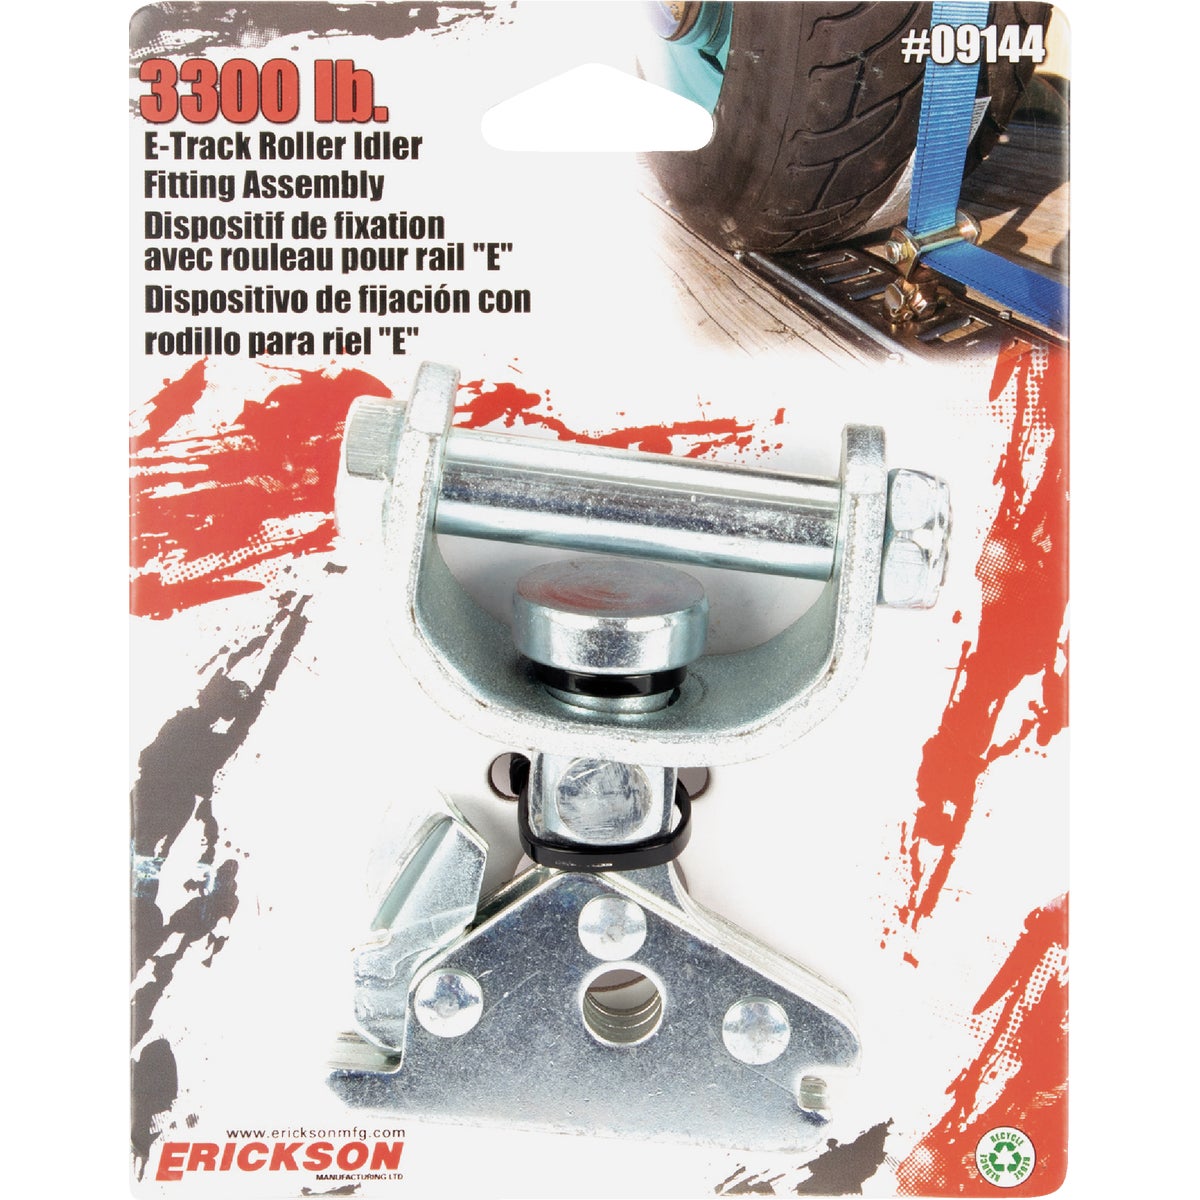 Erickson E-Track 3300 Lb. Roller Idler Fitting Assembly